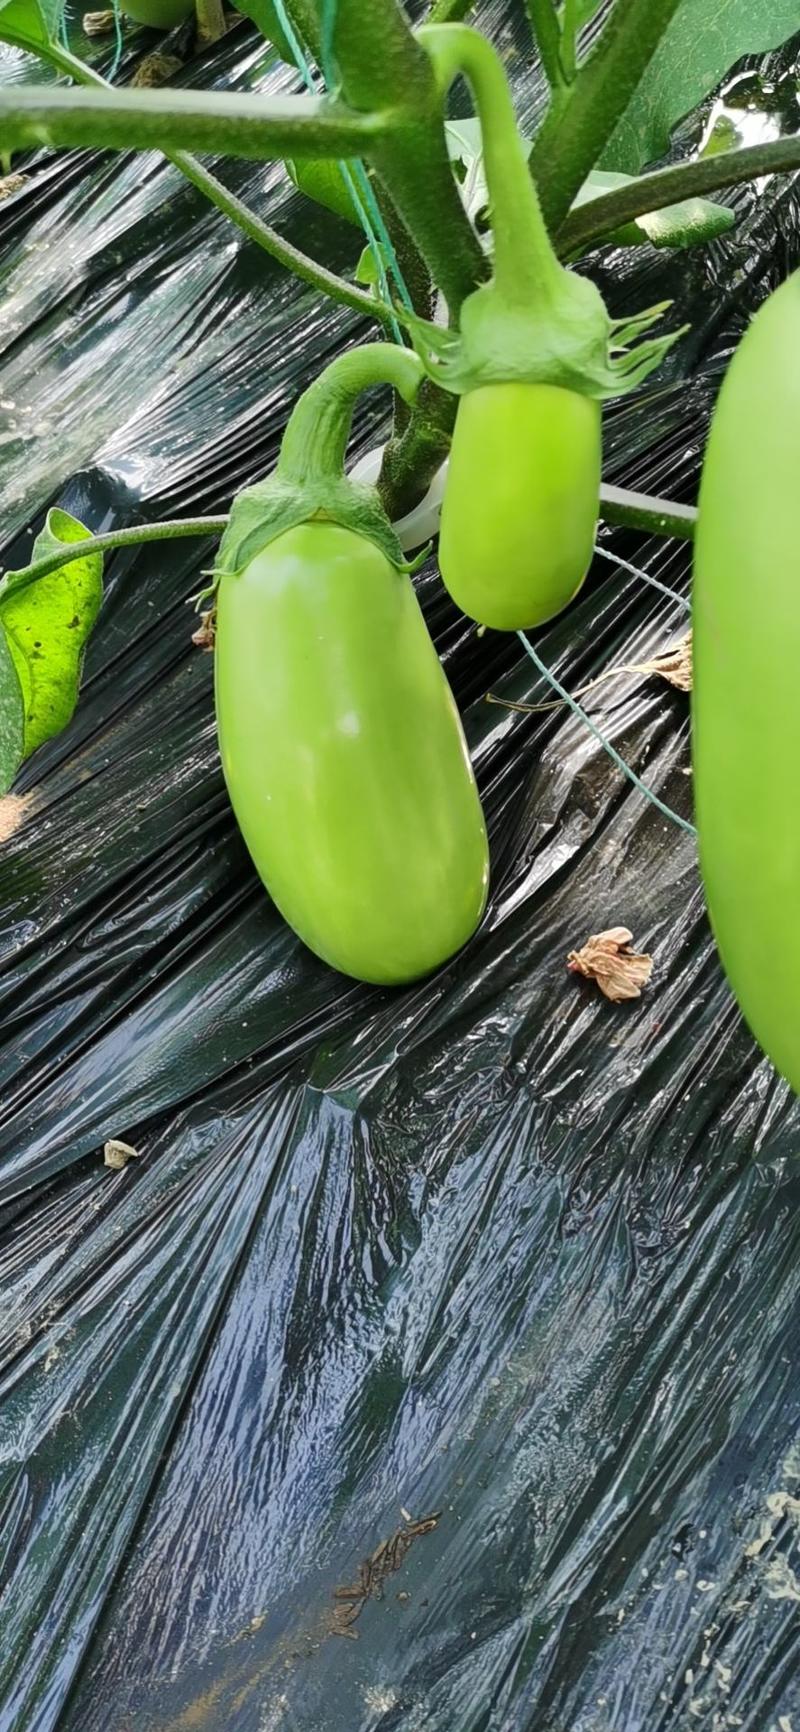 【热销中】本地茄子新鲜采摘青茄子绿茄子质量保证